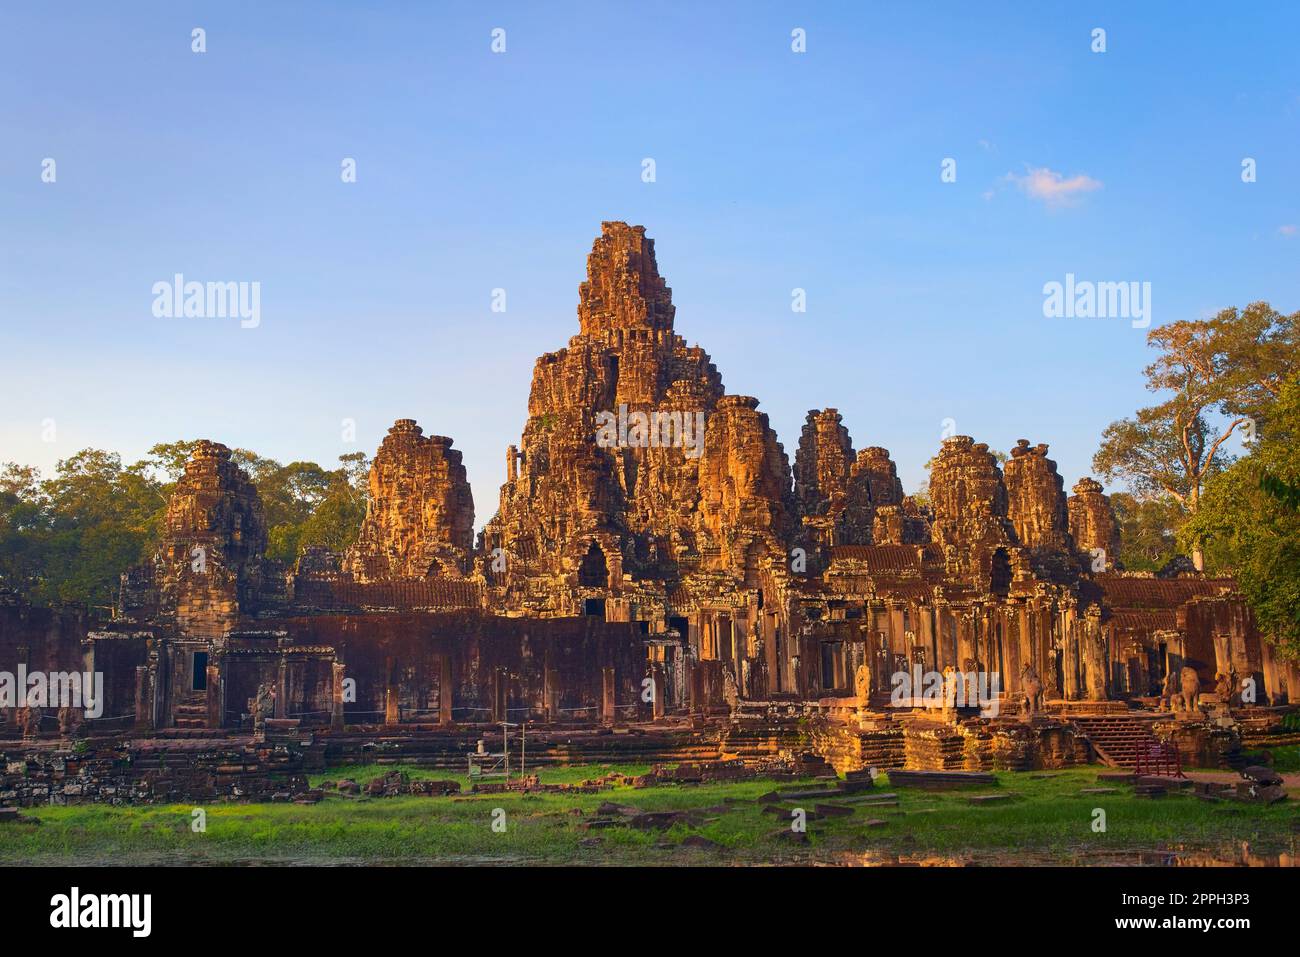 Tempio di Bayon, situato a Angkor, Cambogia, l'antica capitale dell'impero Khmer. Vista generale dall'esterno dall'angolo sud-ovest. Foto Stock